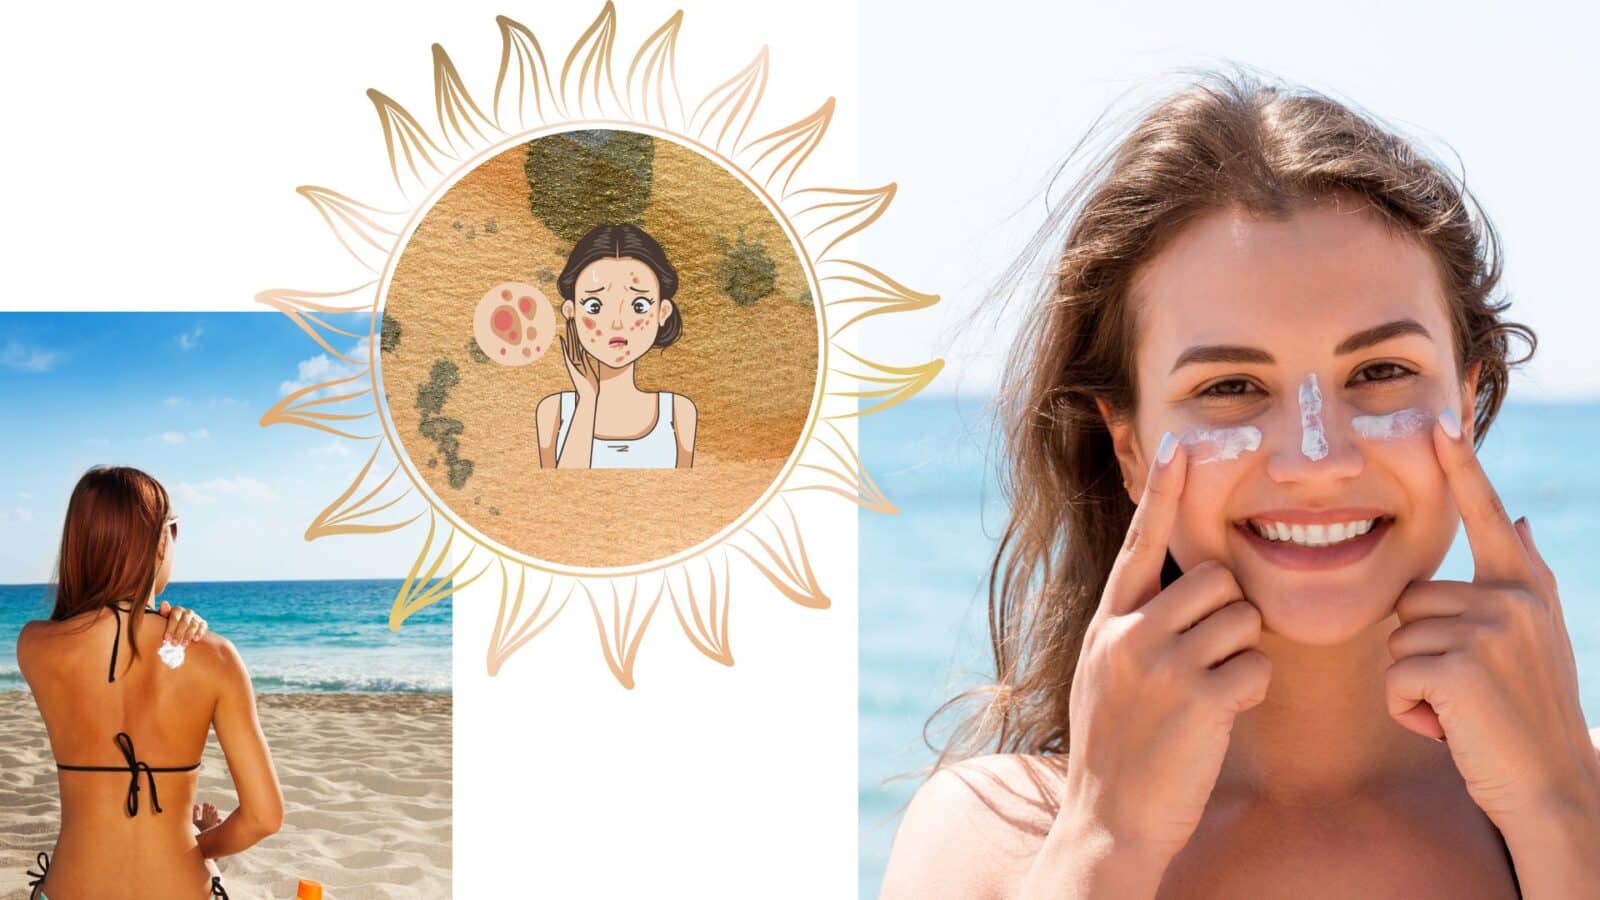 Acné, système immunitaire, vitamine D... : les 5 fausses idées reçues les plus répandues sur le bronzage au soleil !